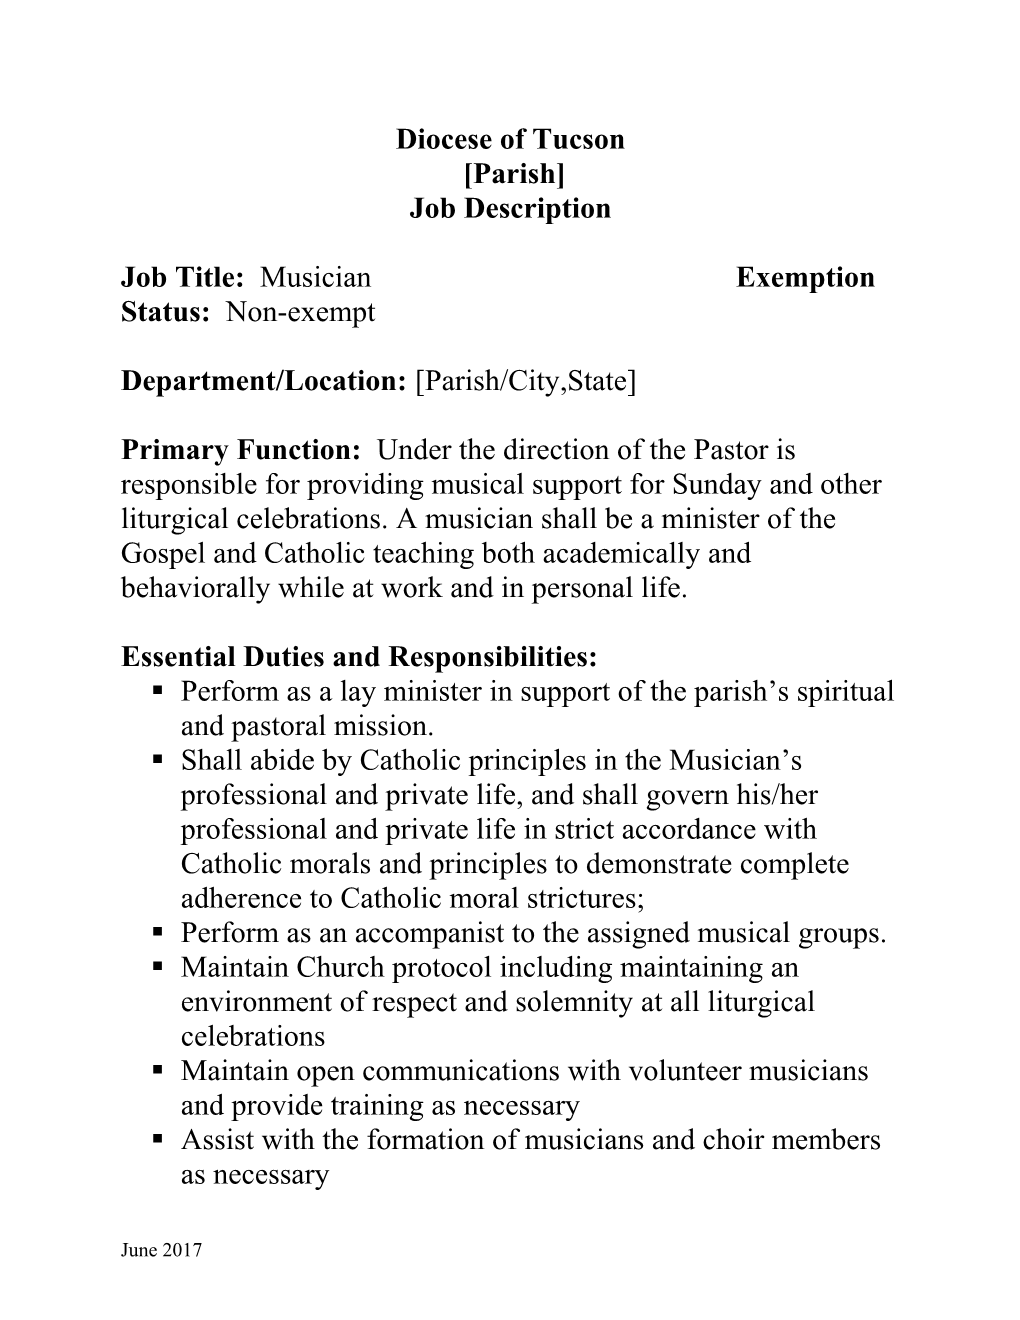 Job Title: Musician Exemption Status: Non-Exempt